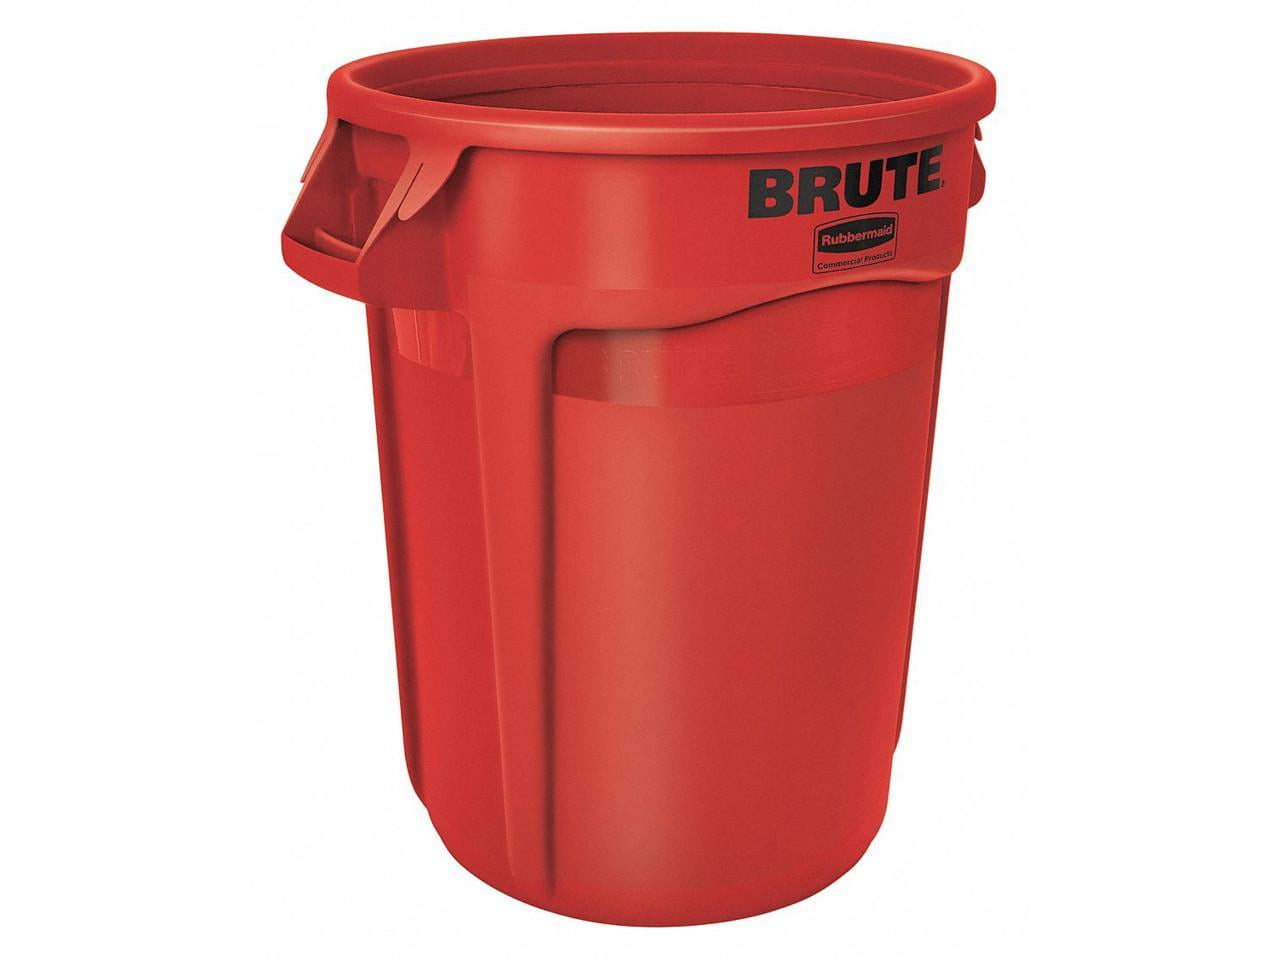 Rubbermaid Brute Trash Can - 32 Gallon - Par West Turf